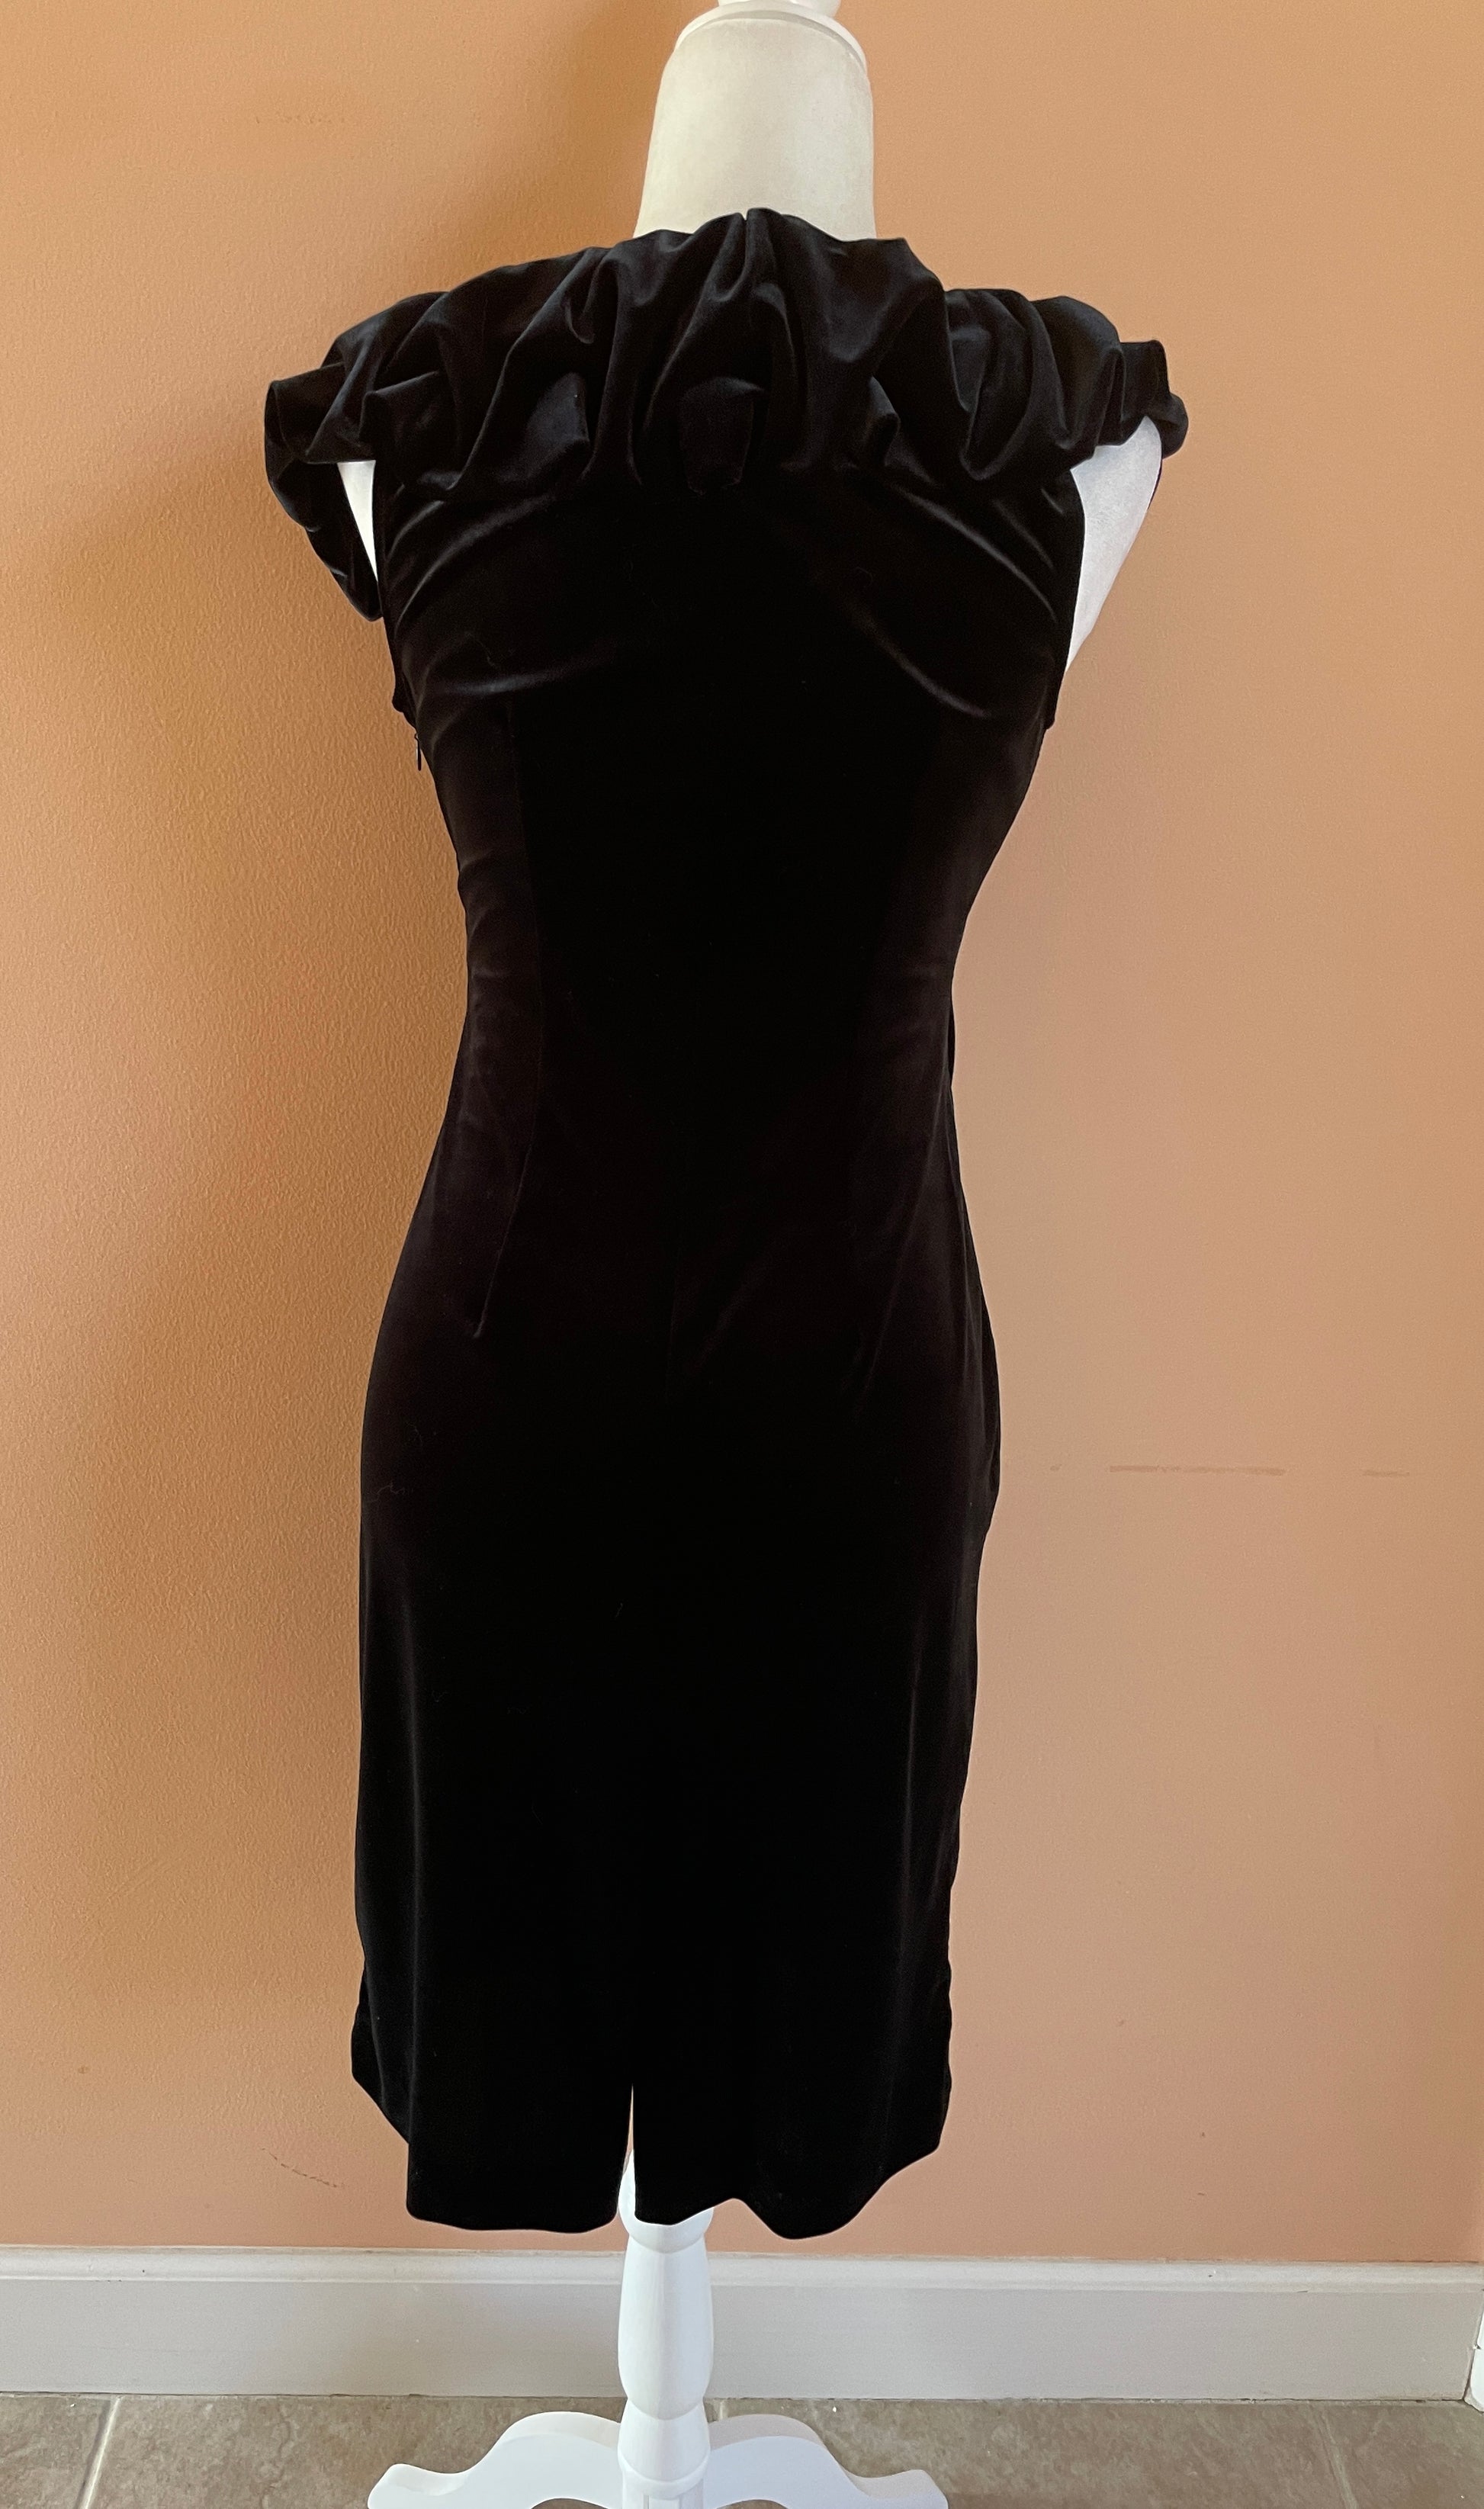  Adrianna Papell 2000s Black Velvet Cocktail Dress S